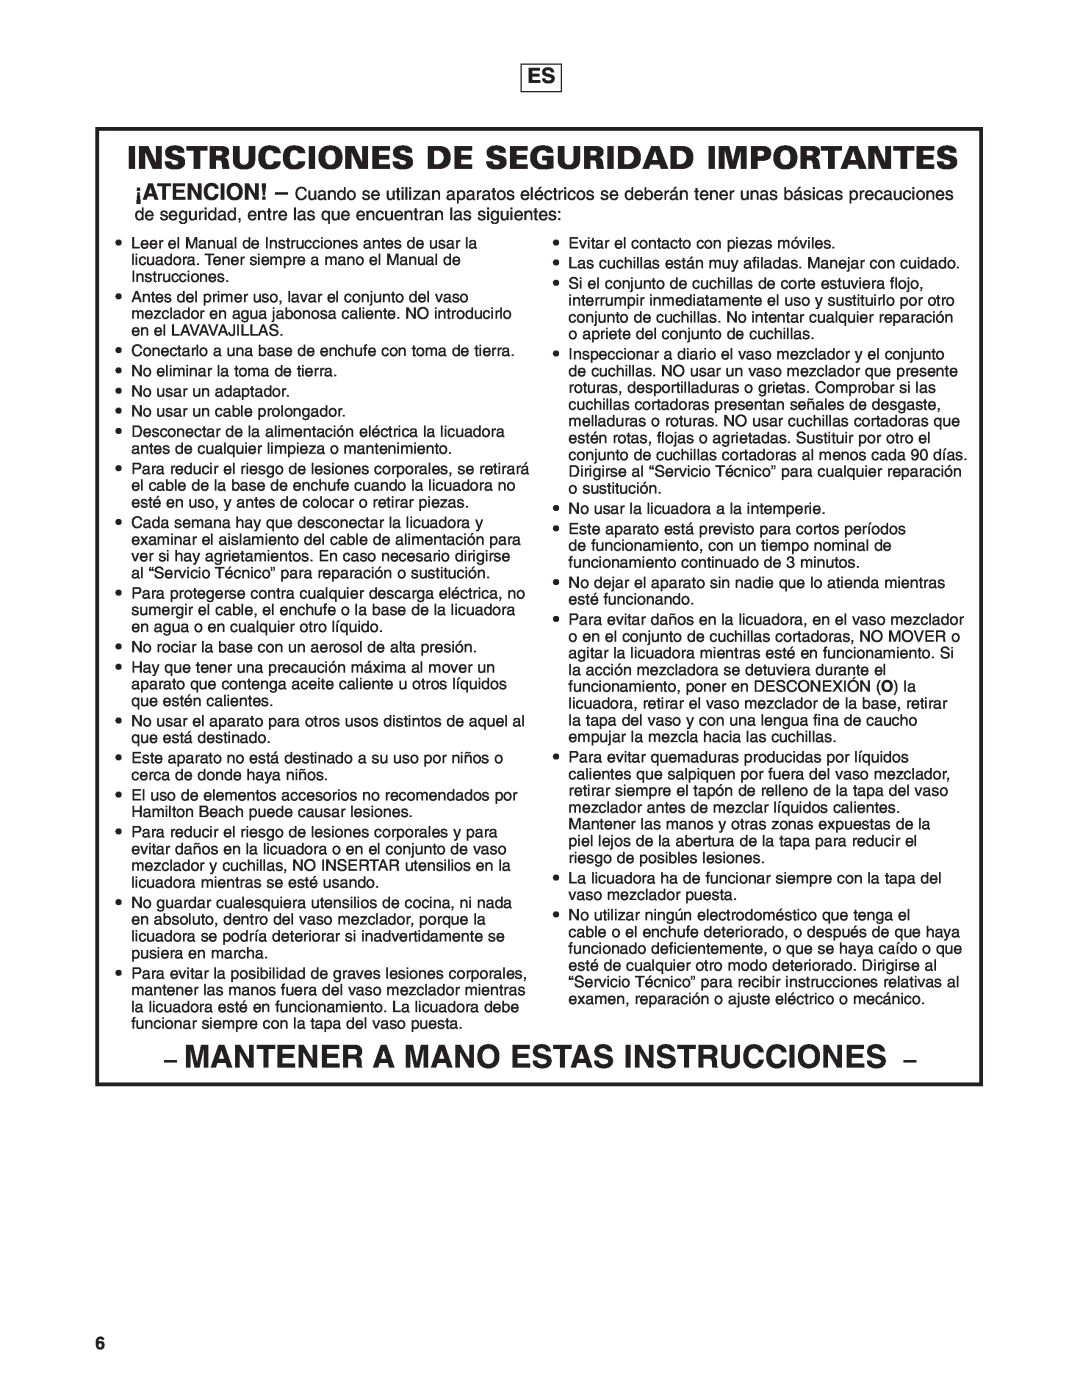 Hamilton Beach 908 Series operation manual Instrucciones De Seguridad Importantes, Mantener A Mano Estas Instrucciones 